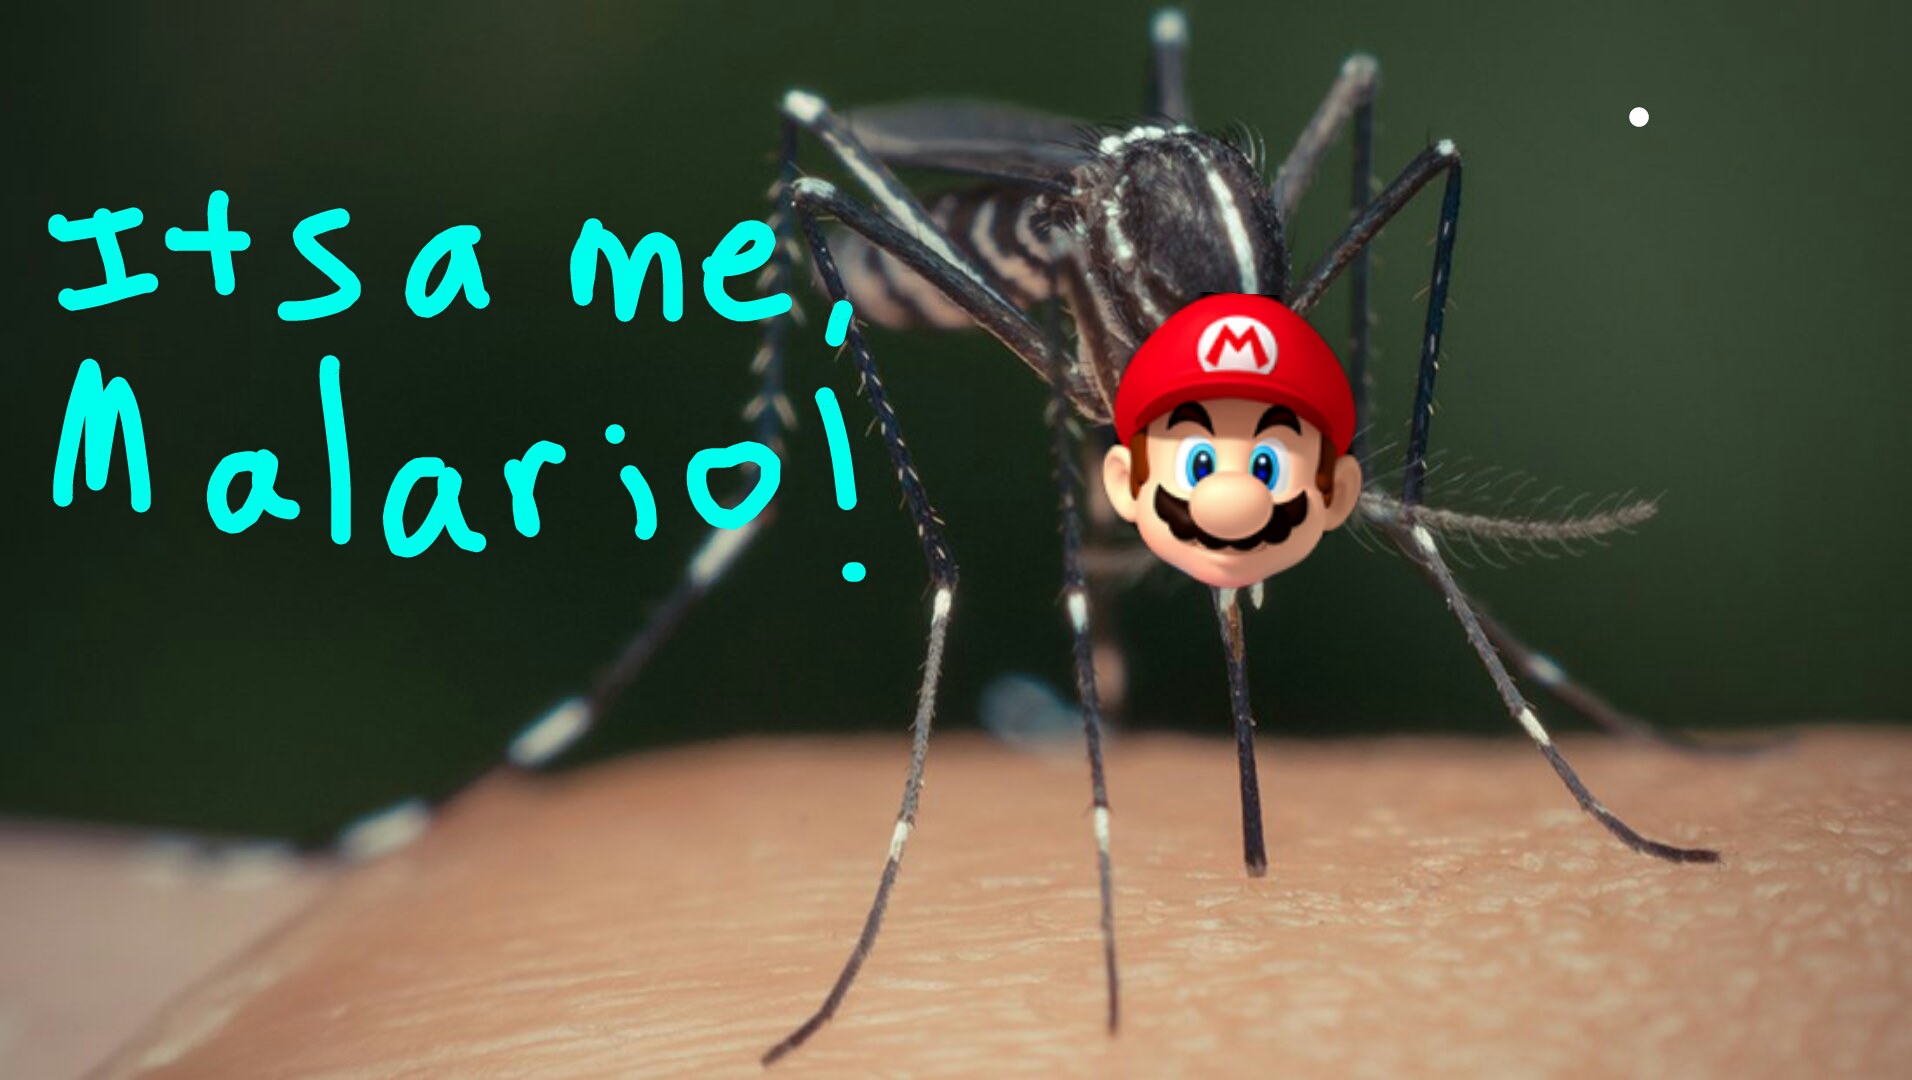 It's a me, Malario! - Imgur